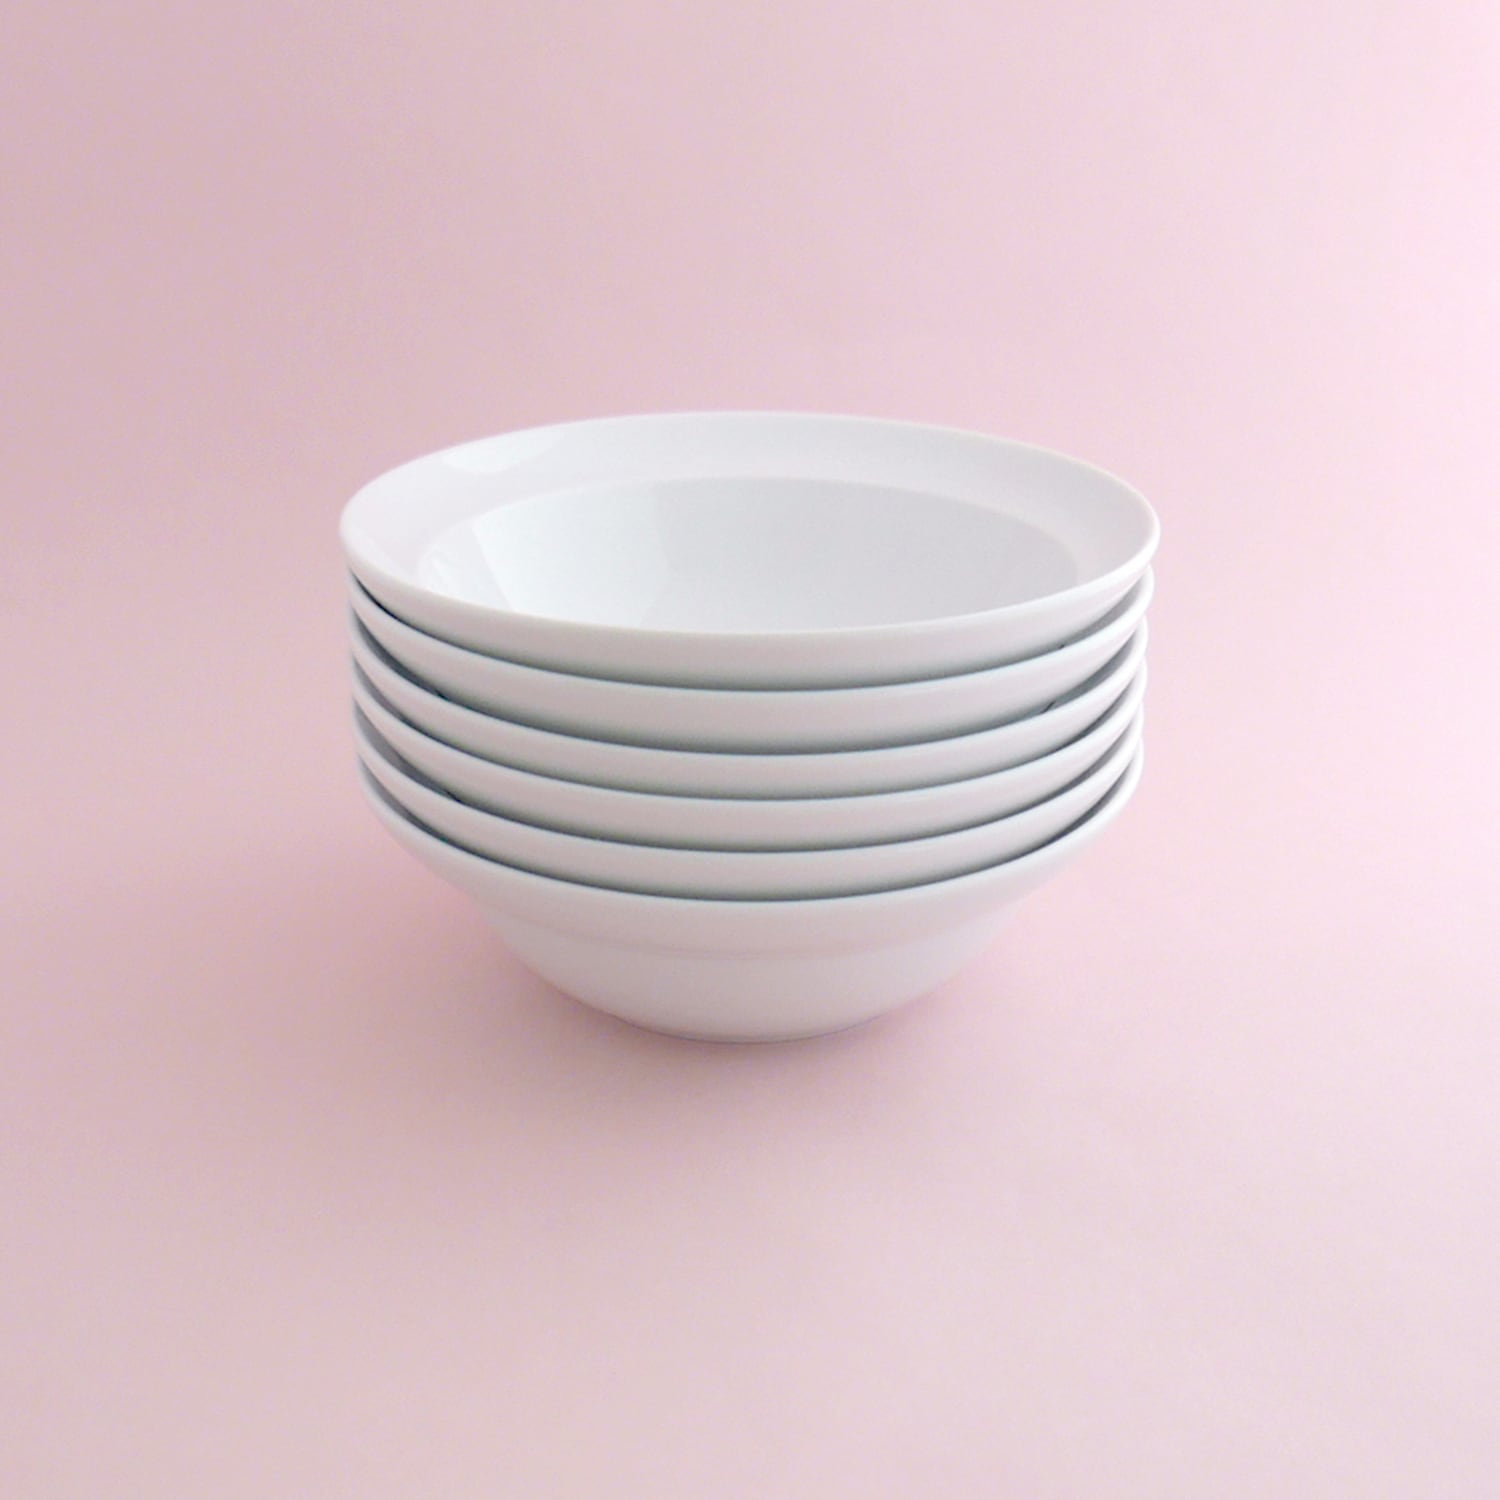 FUNCTION Dish round スープ皿 シチュー皿 180mm 0.45L 白い食器 陶磁器 BAUSCHER バウシャー ドイツ製